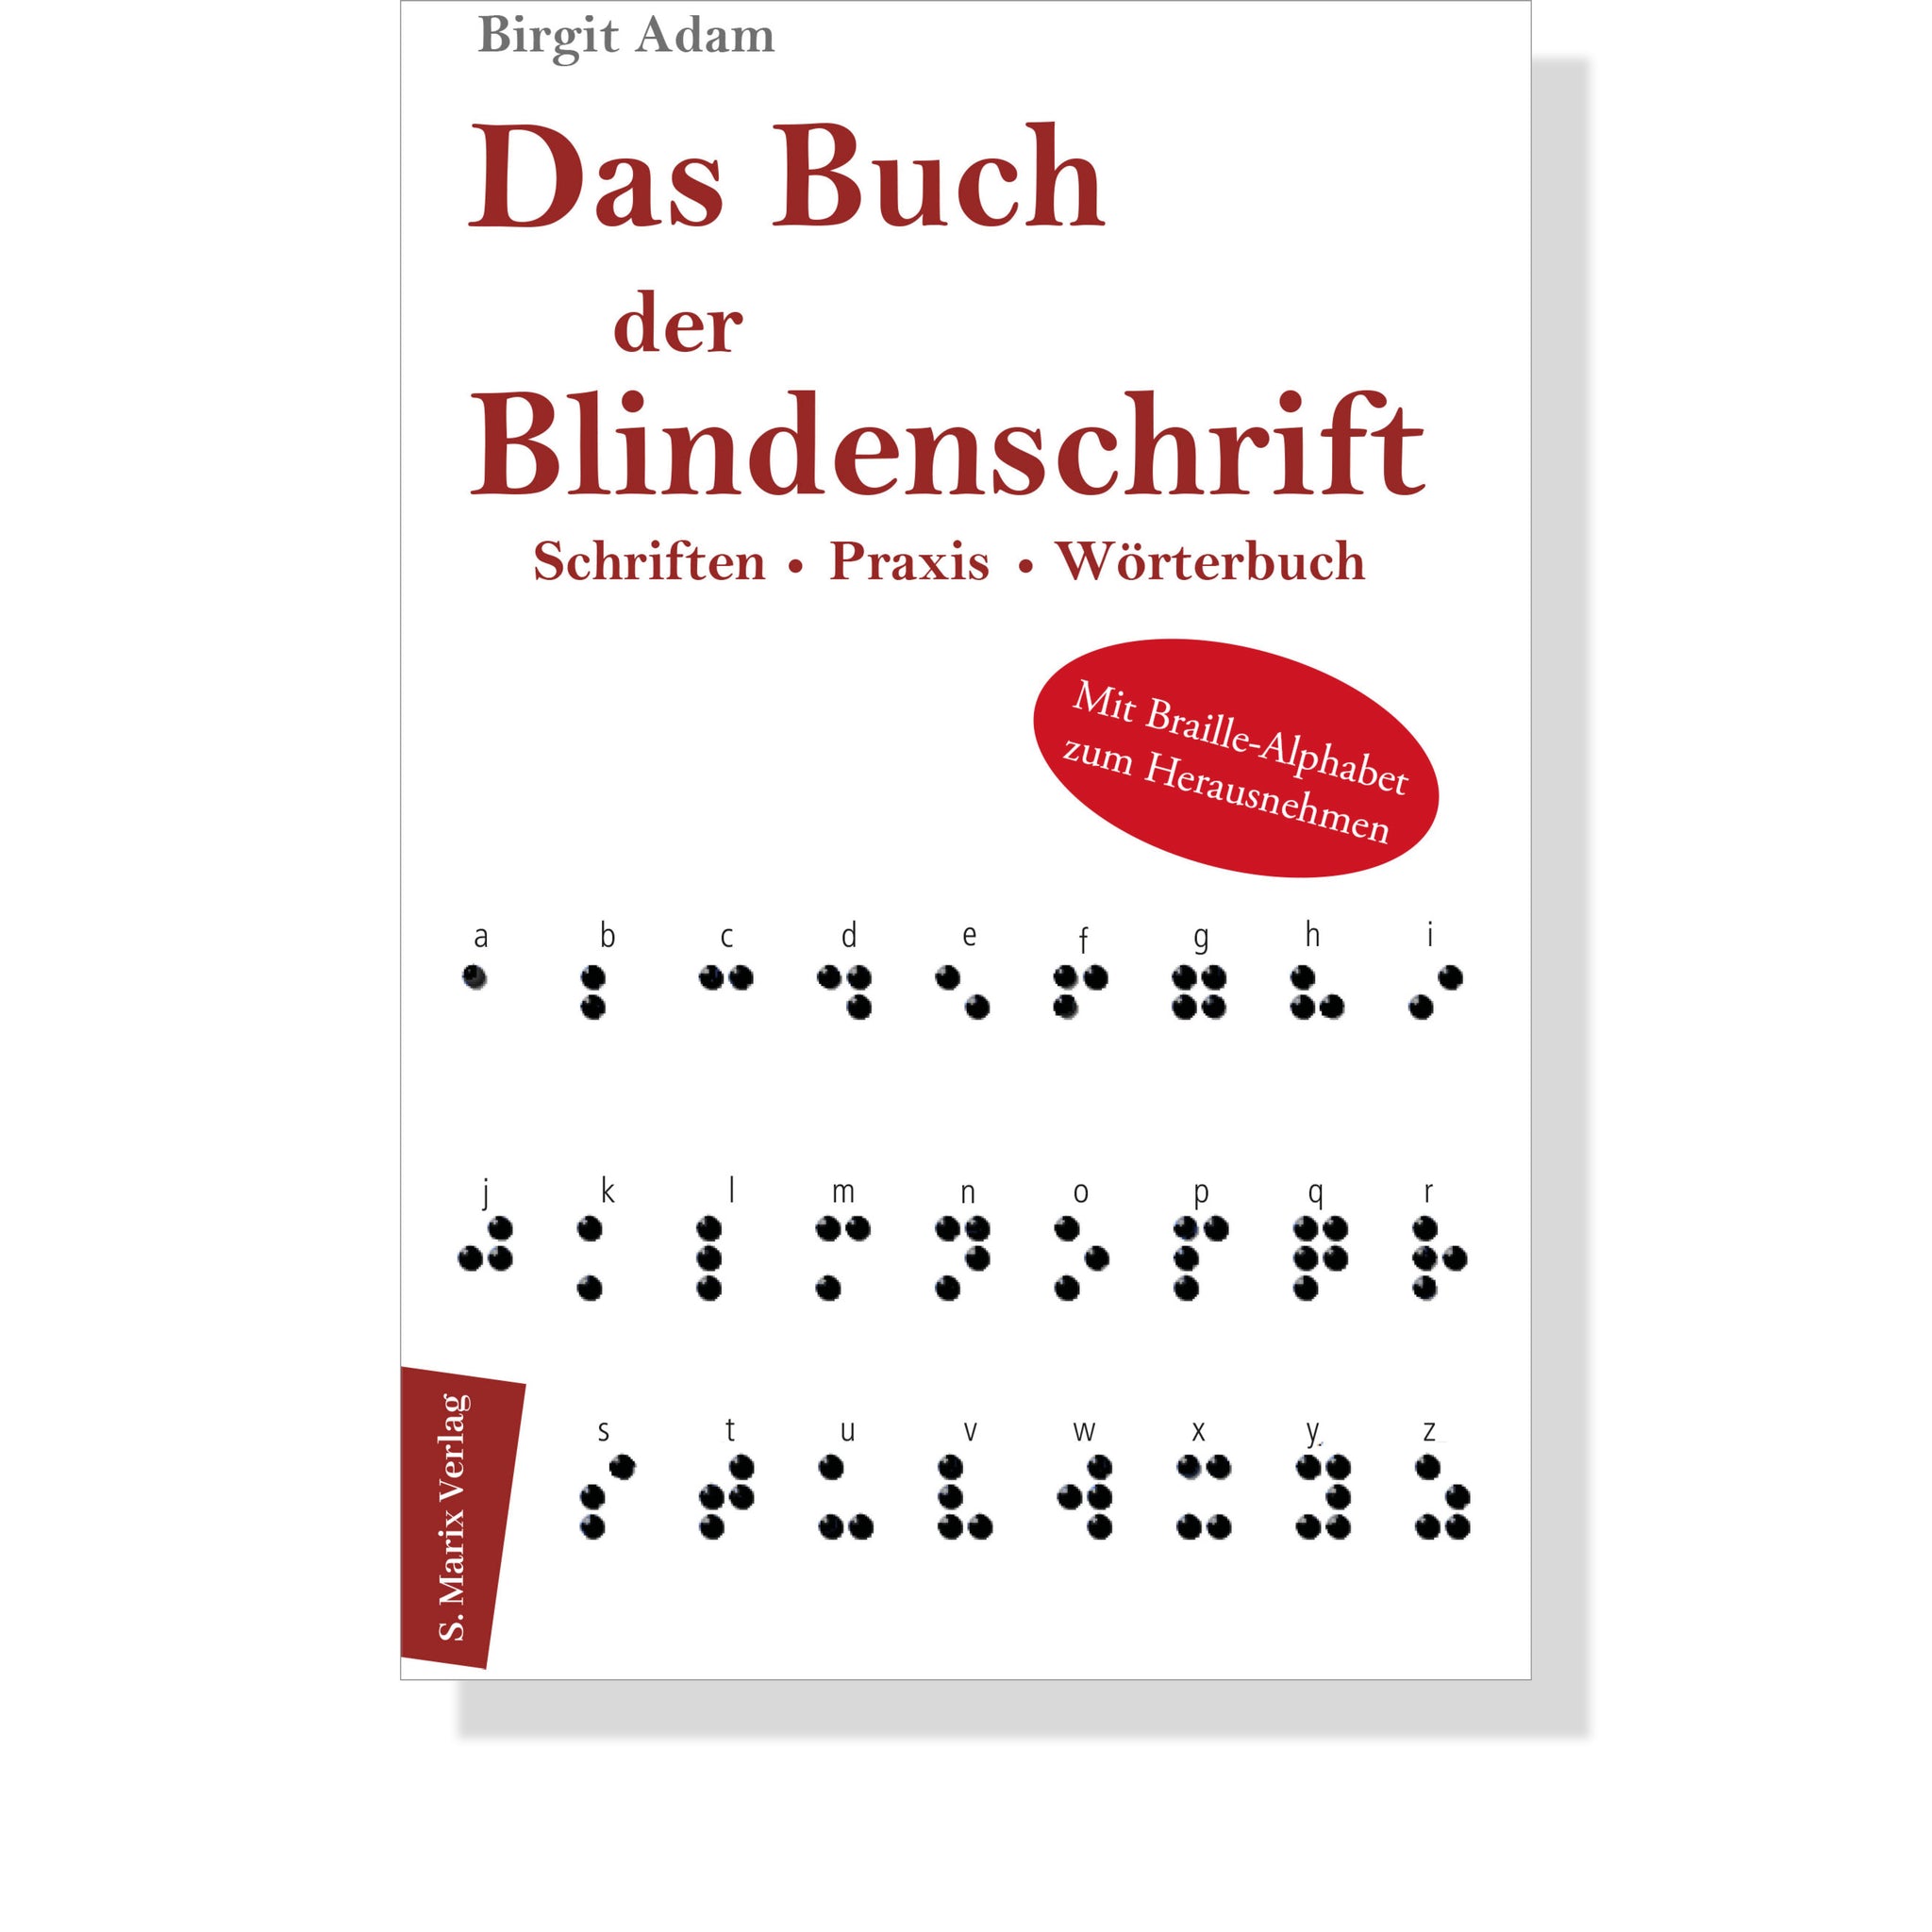 Das Buch der Blindenschrift